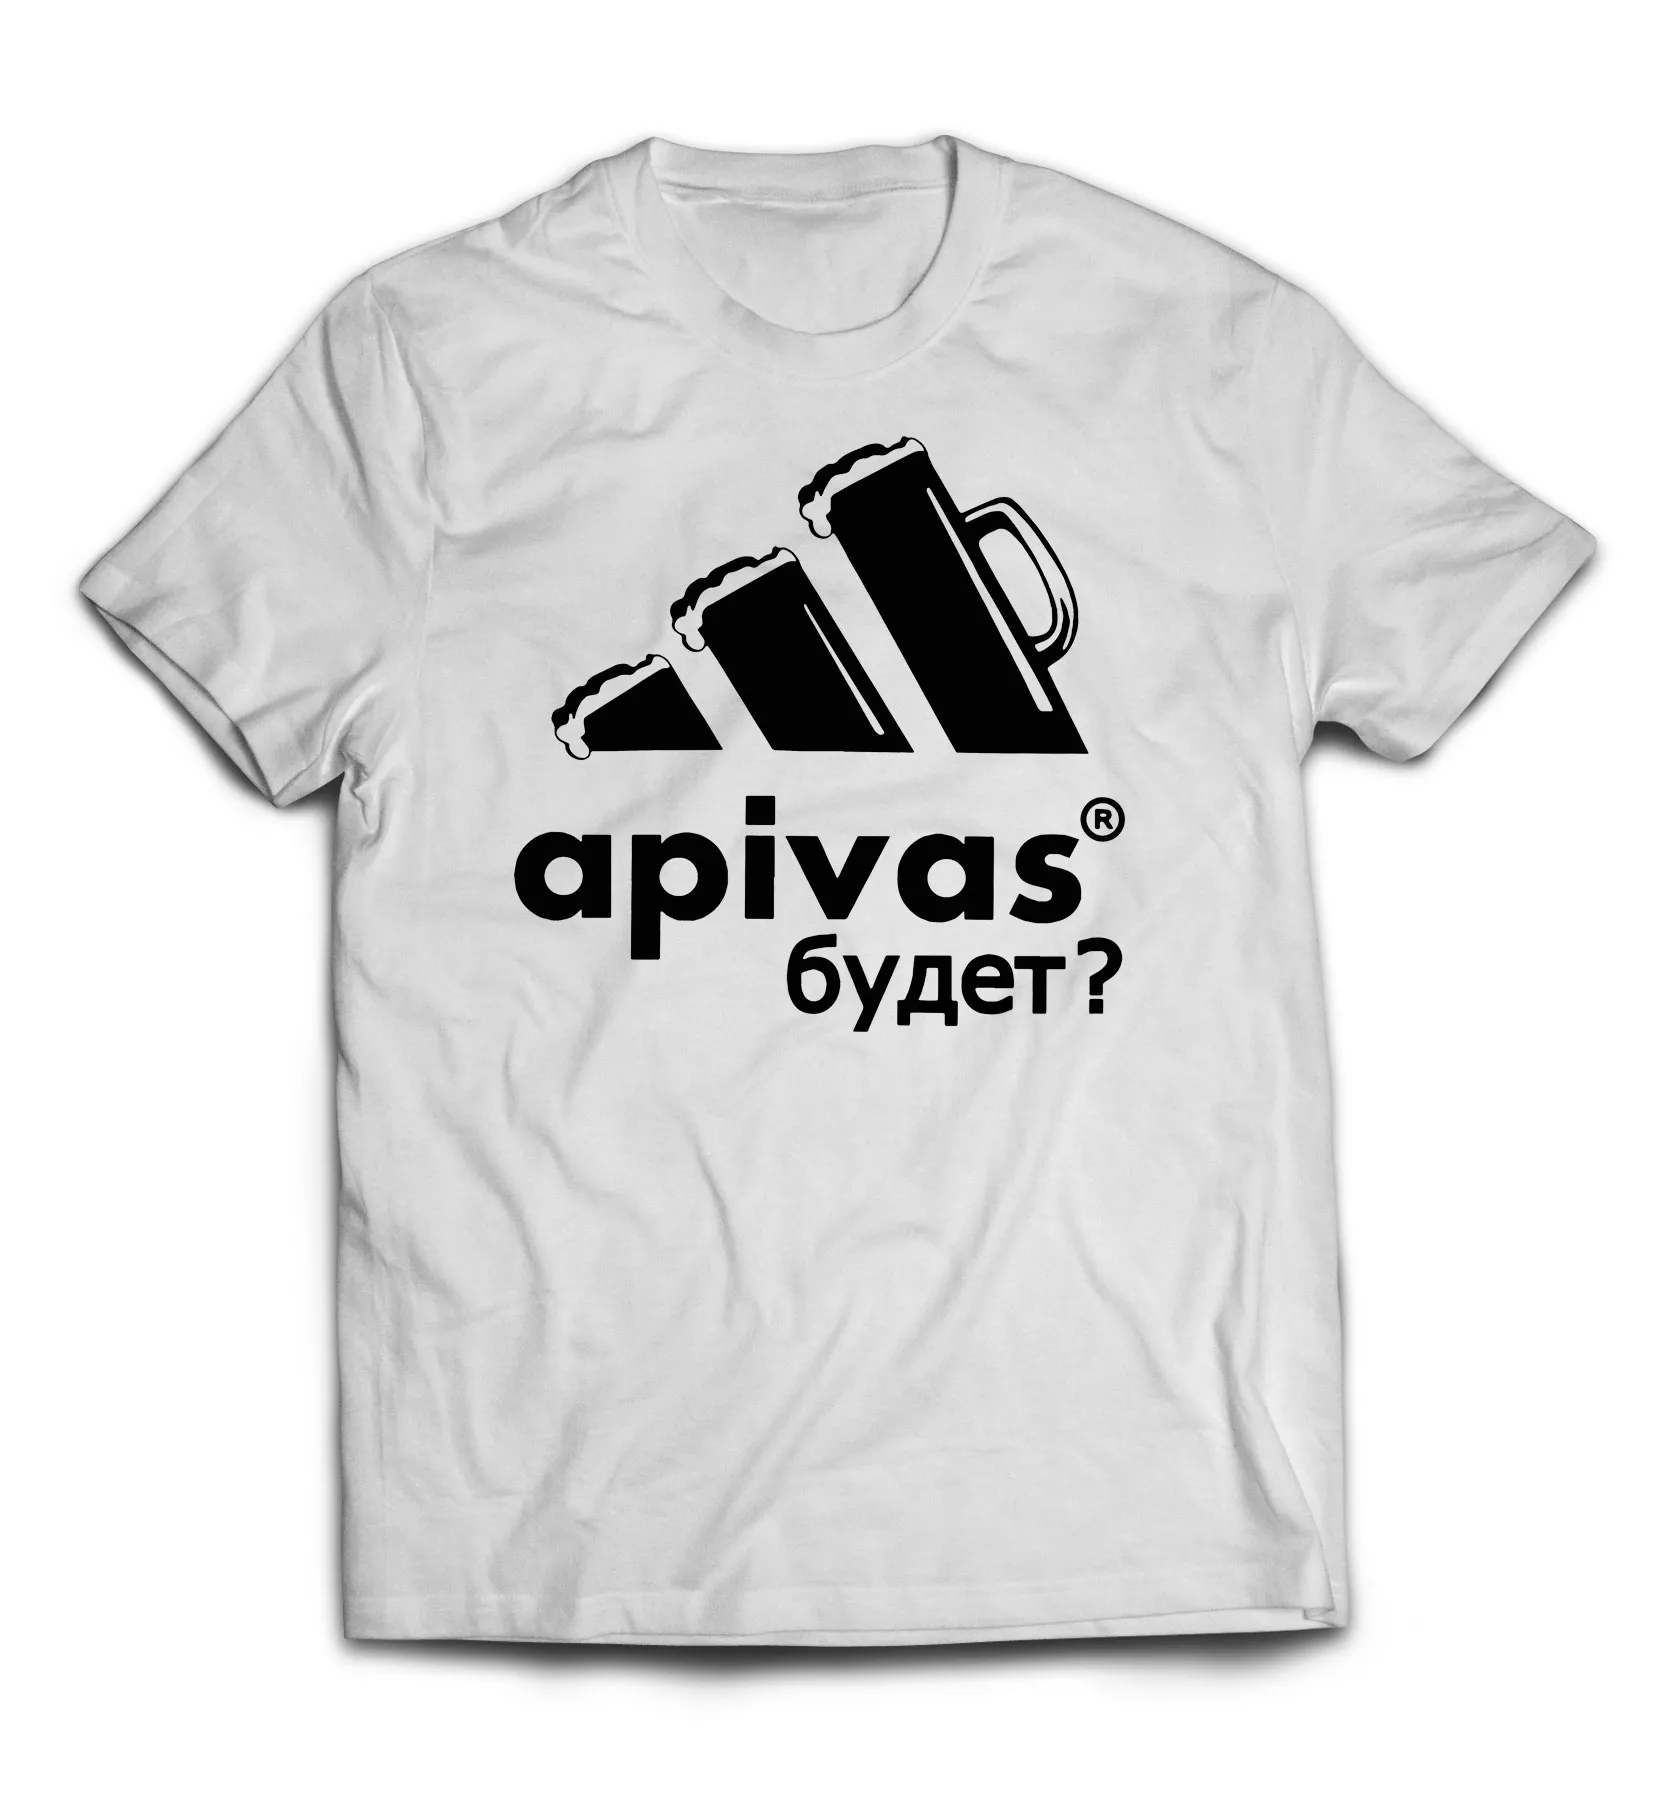 Белая мужская футболка - Apivas будет?